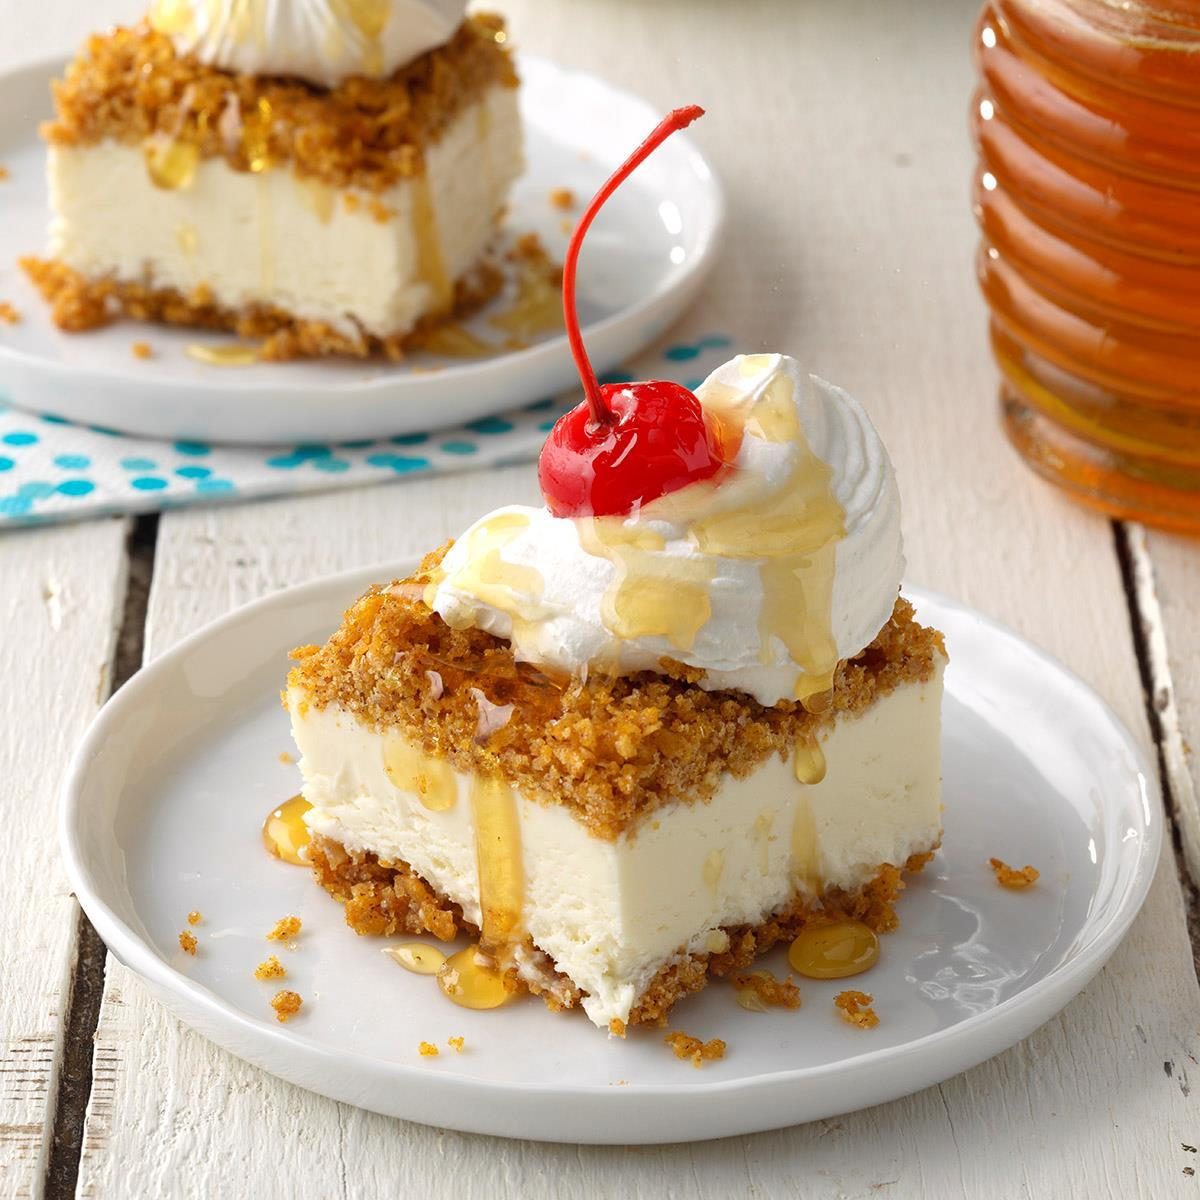 https://www.tasteofhome.com/wp-content/uploads/2019/05/Fried-Ice-Cream-Dessert-Bars-_EXPS_SDJJ19_232652_B02_06_1b_rms-2.jpg